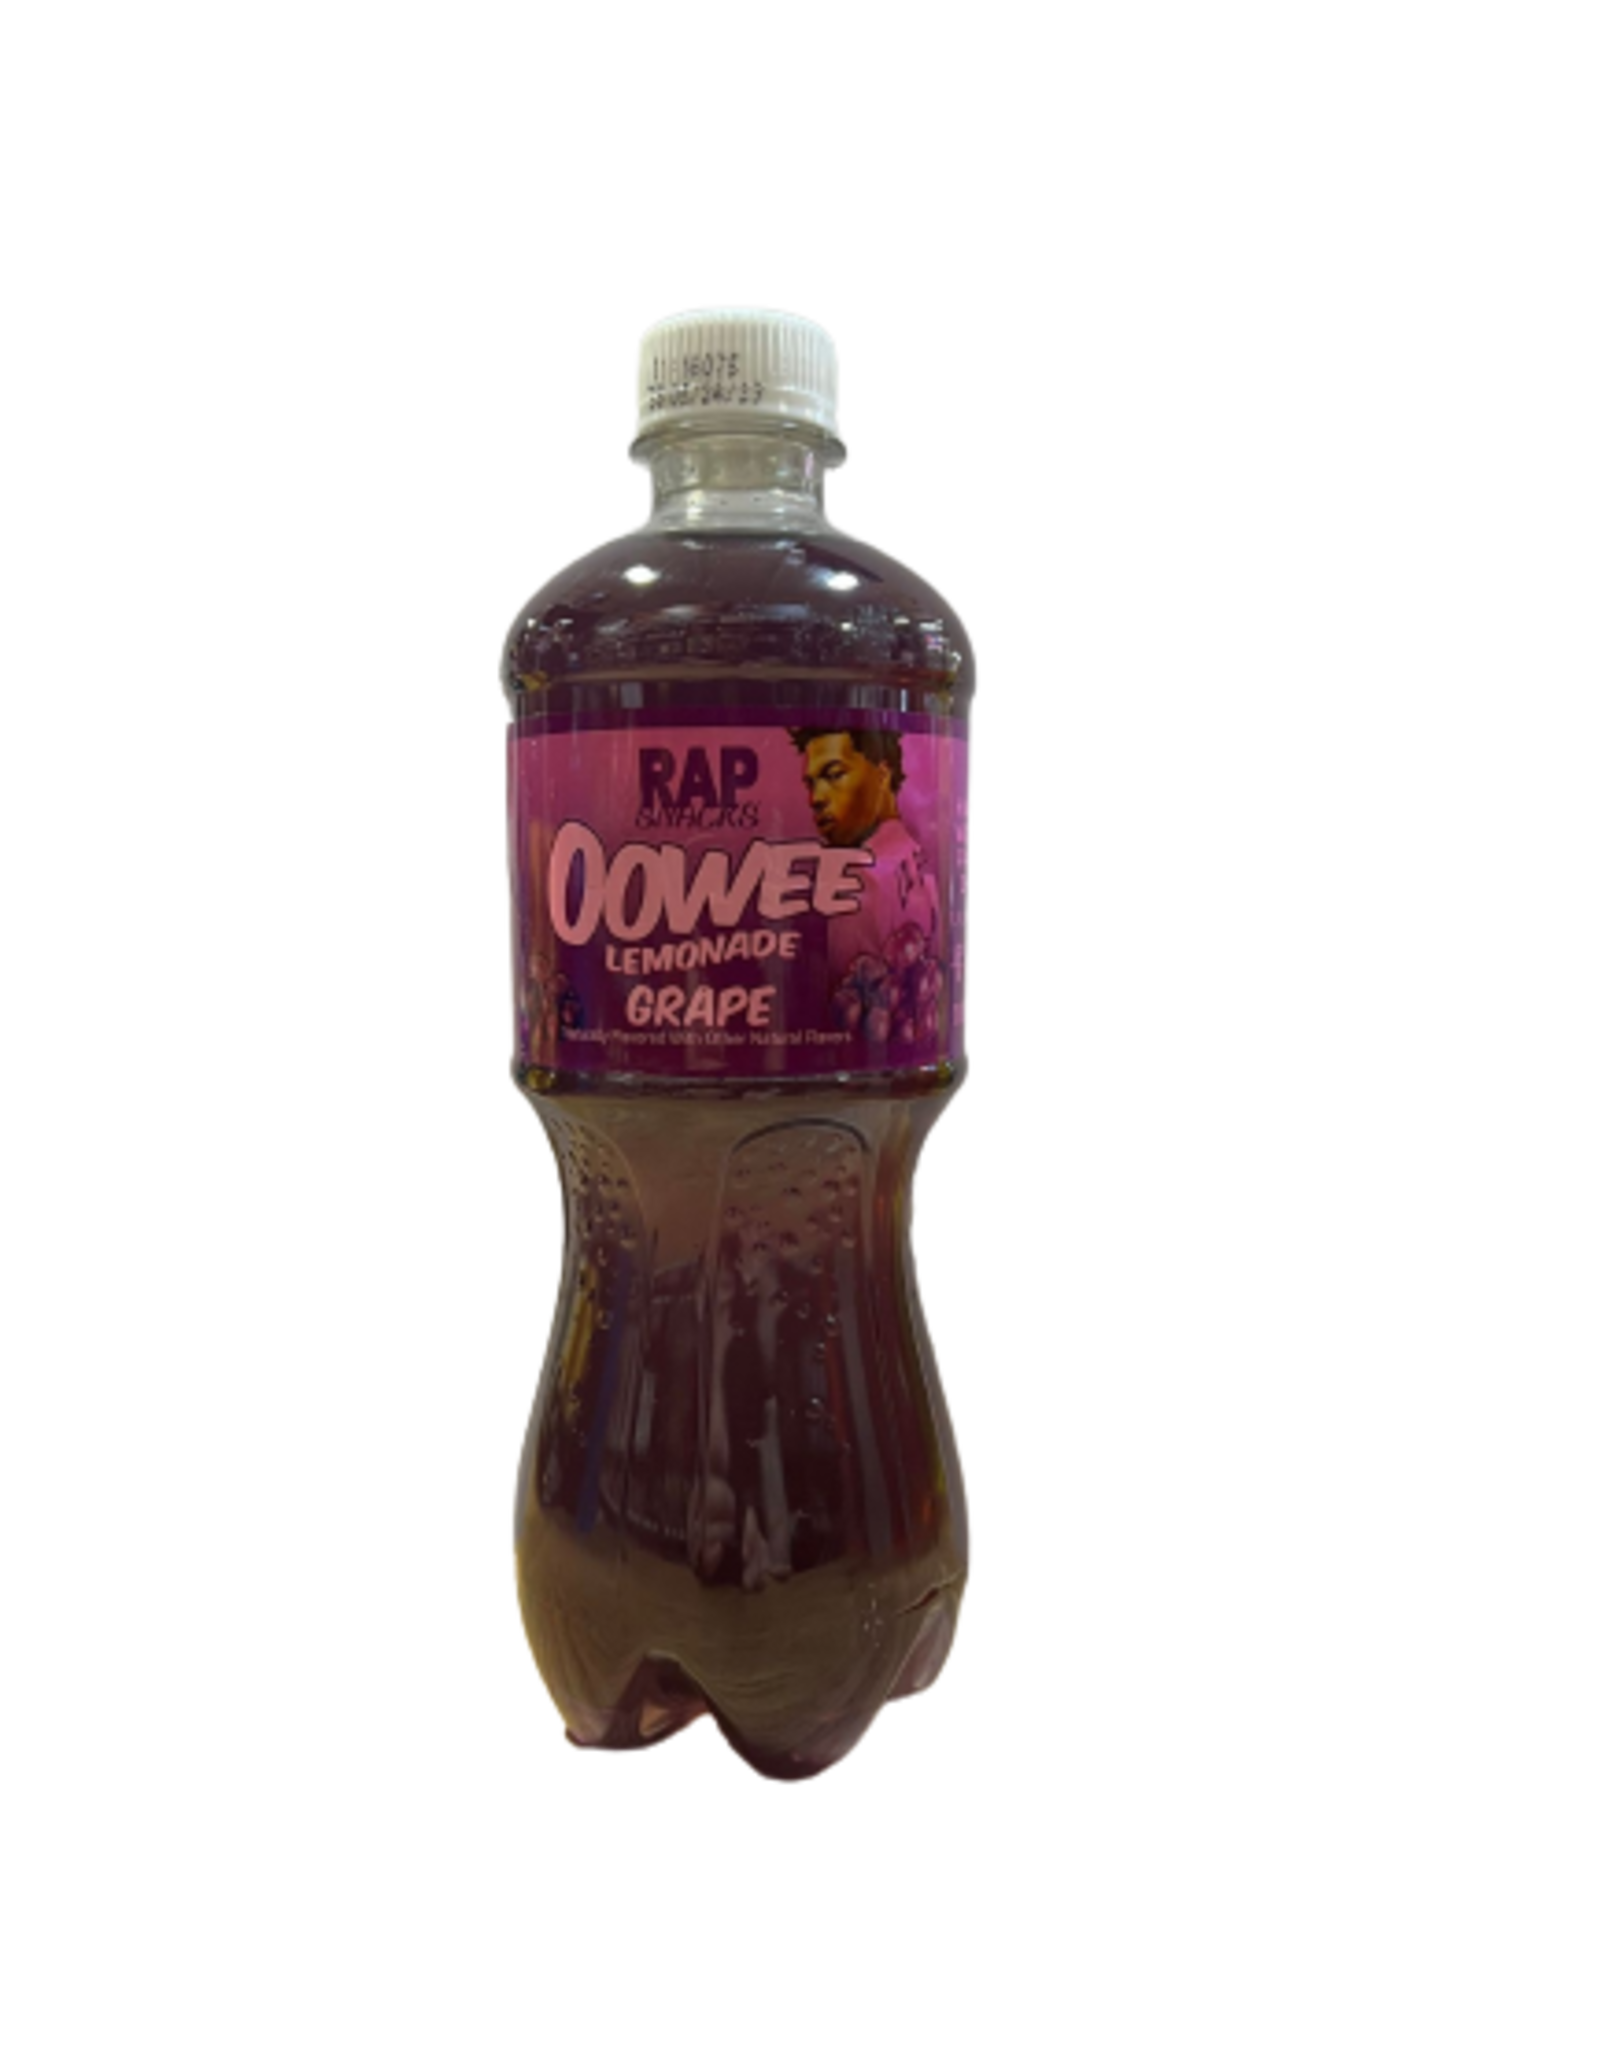 Oowee Lemonade Grape